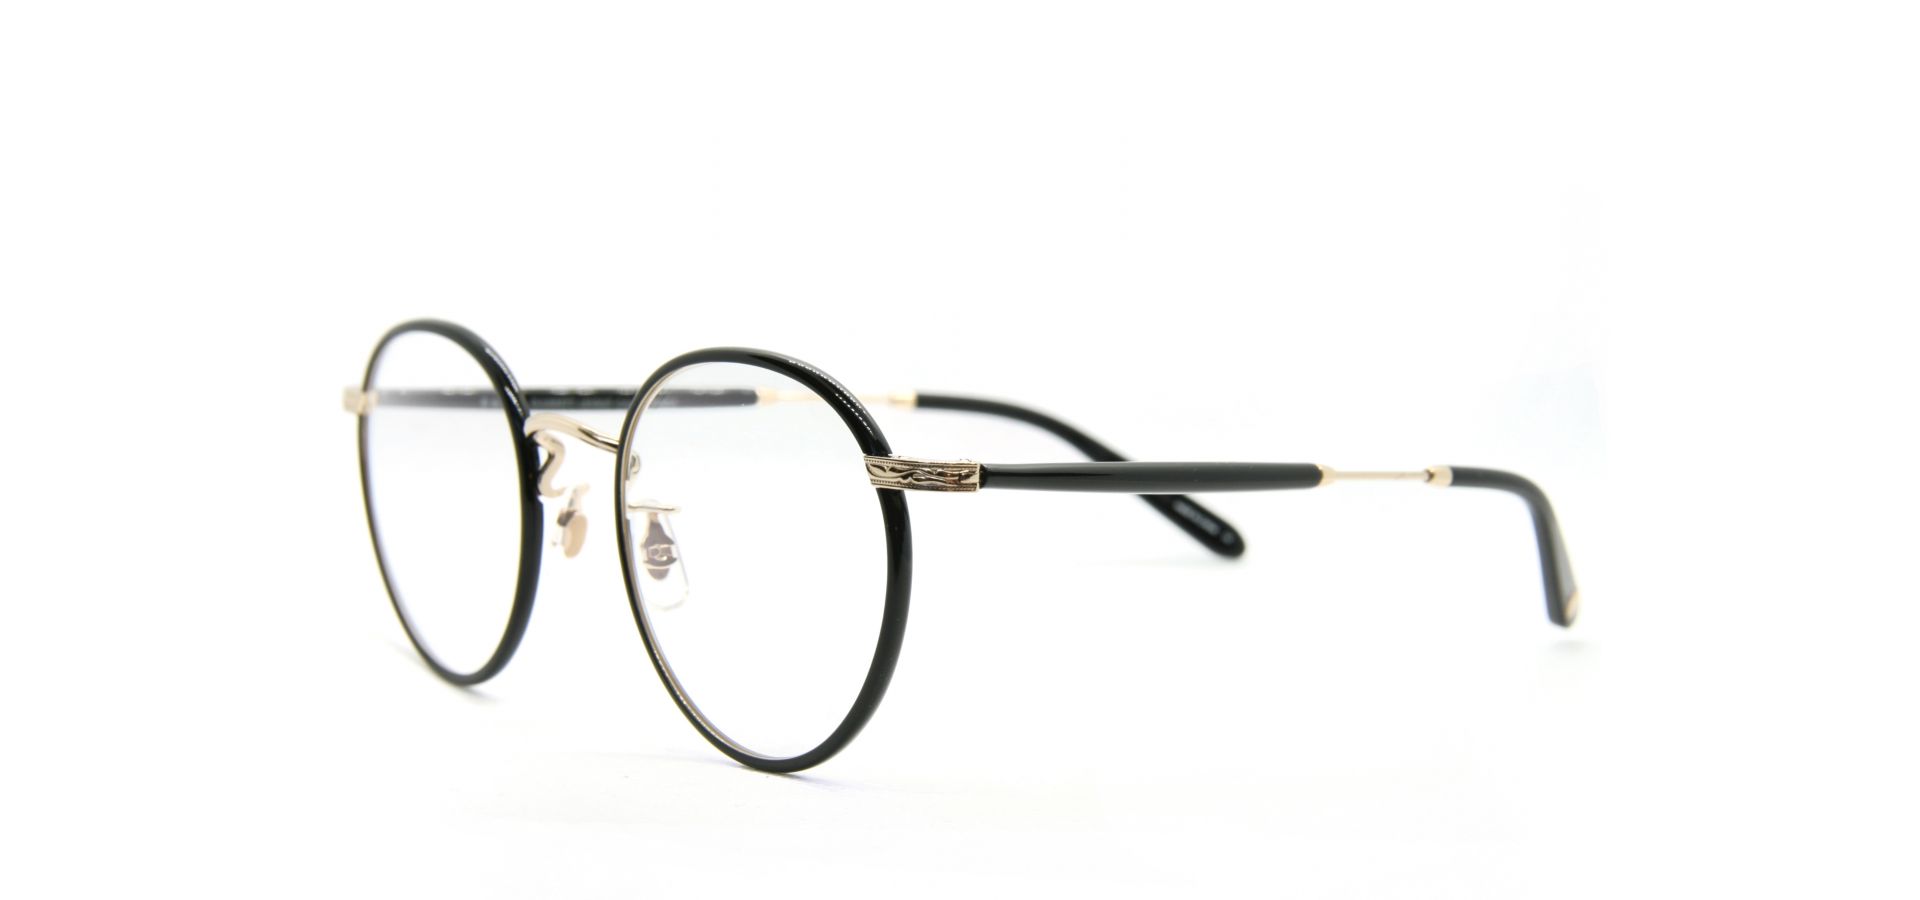 Korekcijska očala Garrett Leight WILSON 49 BLACK GOLD BLACK: Velikost: 49/22, Spol: unisex, Material: acetat/kovinska